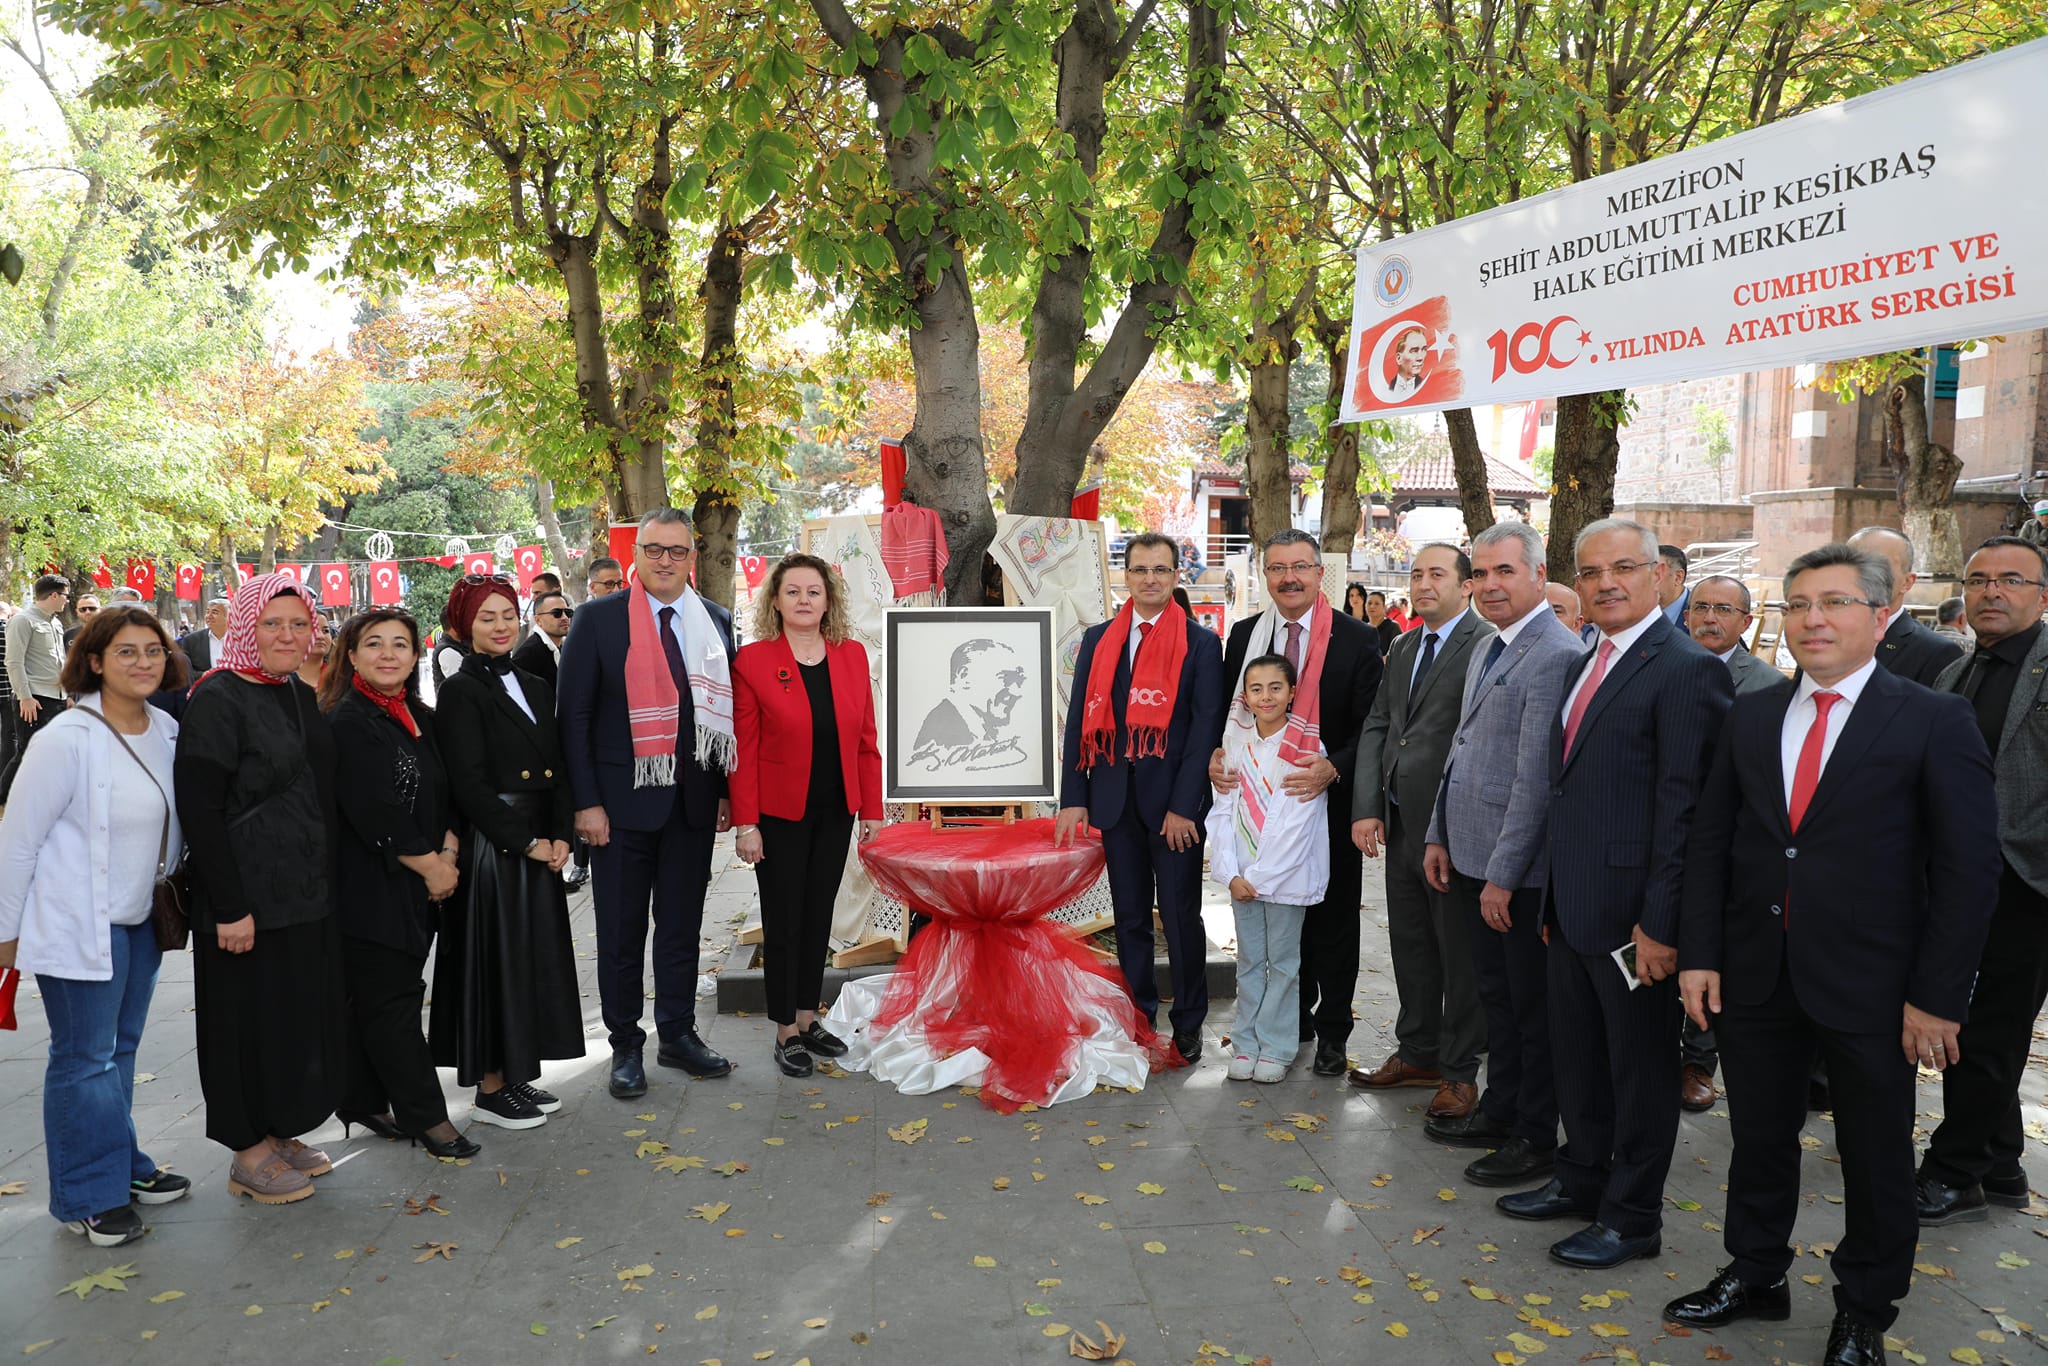 Merzifon’da Atatürk ve Cumhuriyet temalı resim sergisi açıldı